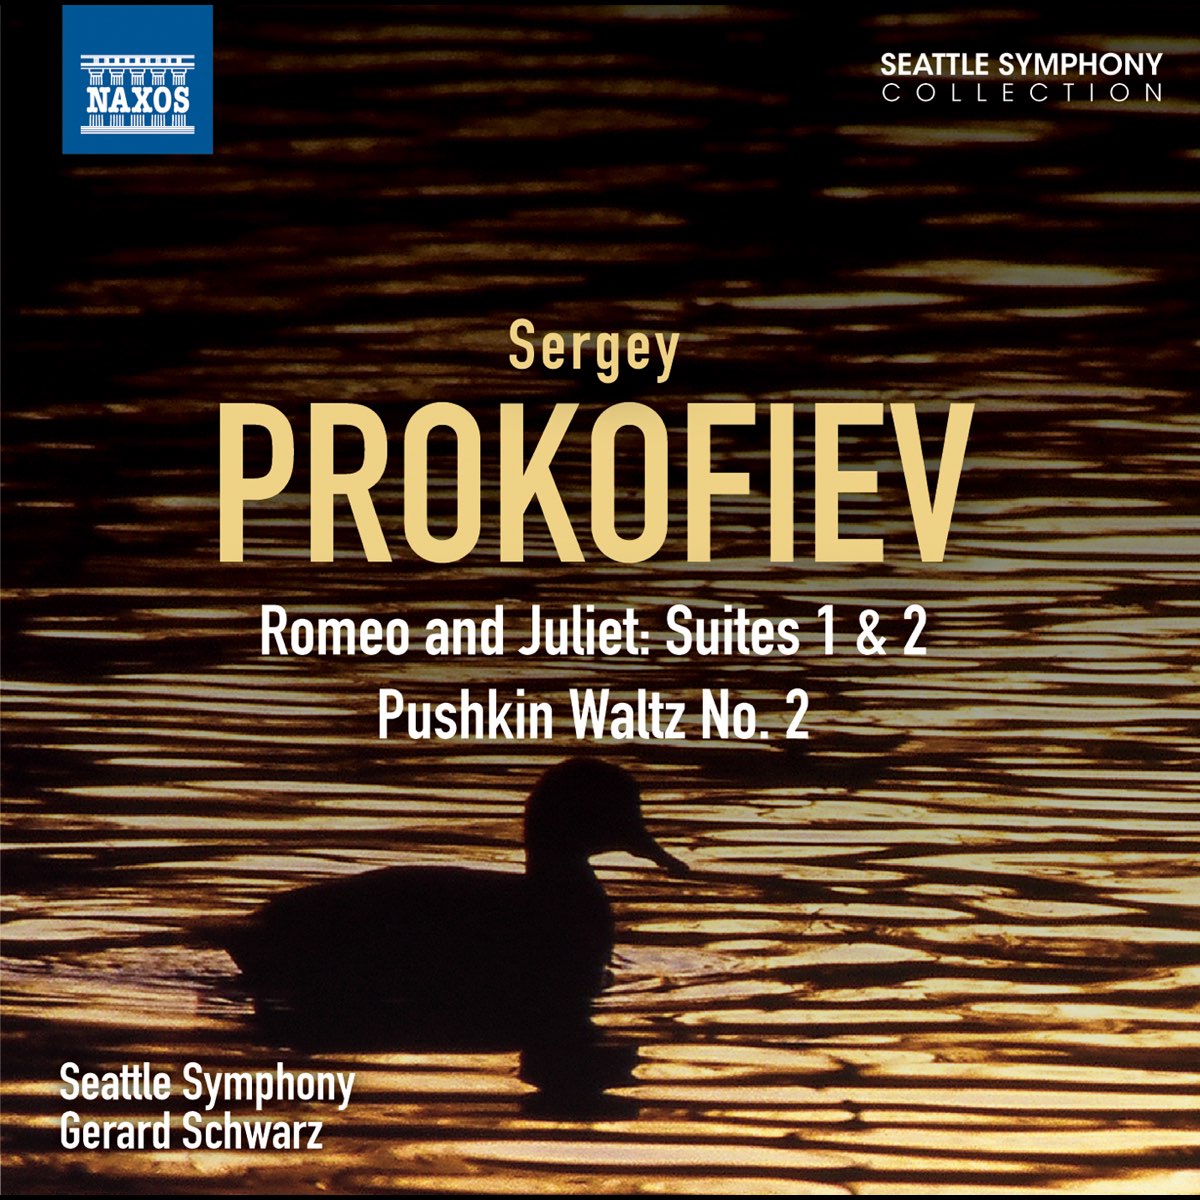 Пушкин сюита. Prokofiev Romeo and Juliet Suite for Trombone.